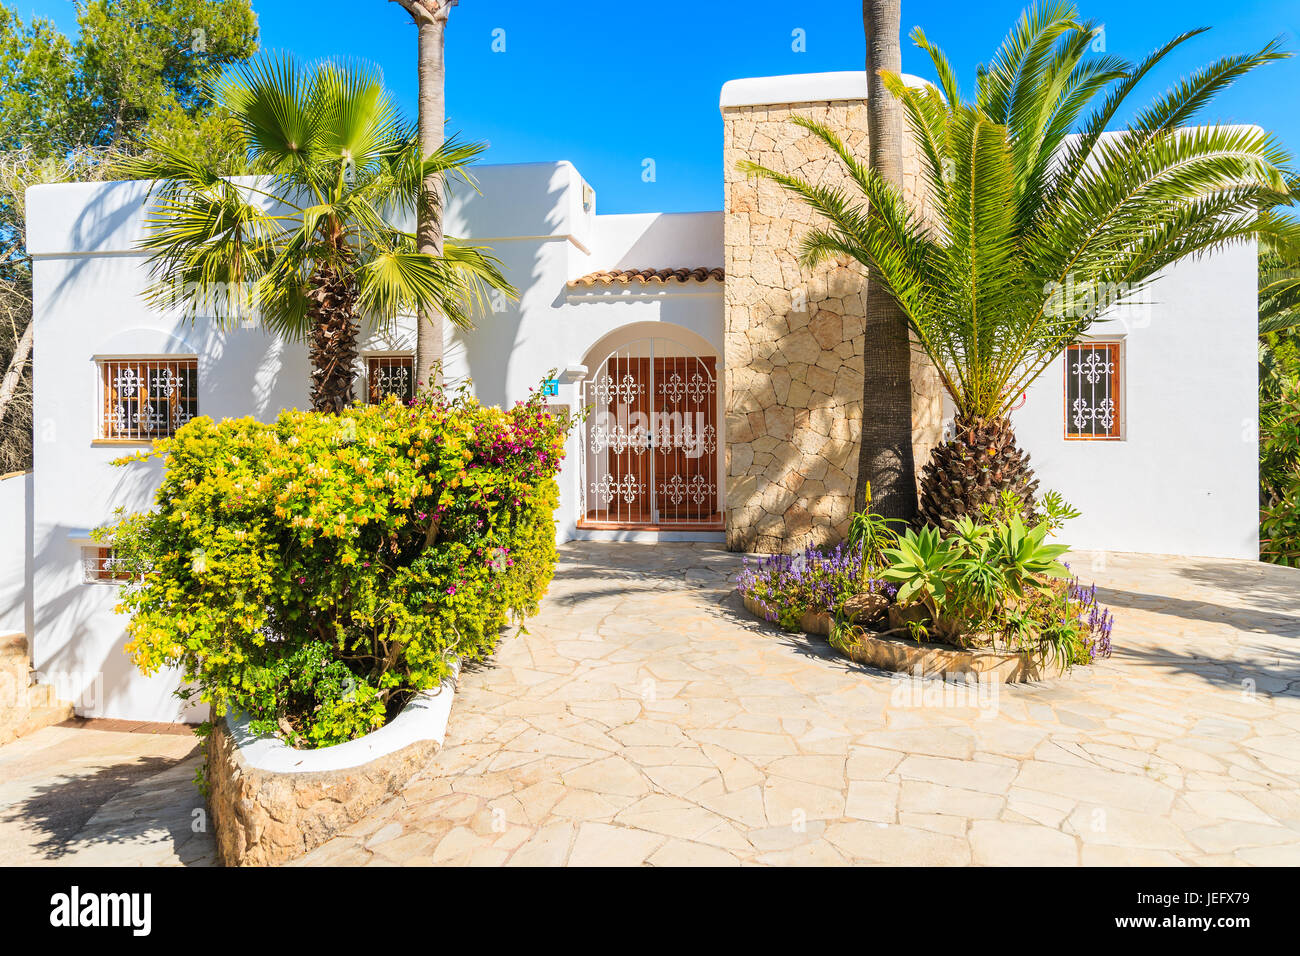 Insel IBIZA, Spanien - 20 Mai 2-17: Luxus weiße Farbe Urlaub Villa und Palmen Bäume im Garten in Cala Nova Gegend der Insel Ibiza, Spanien. Stockfoto